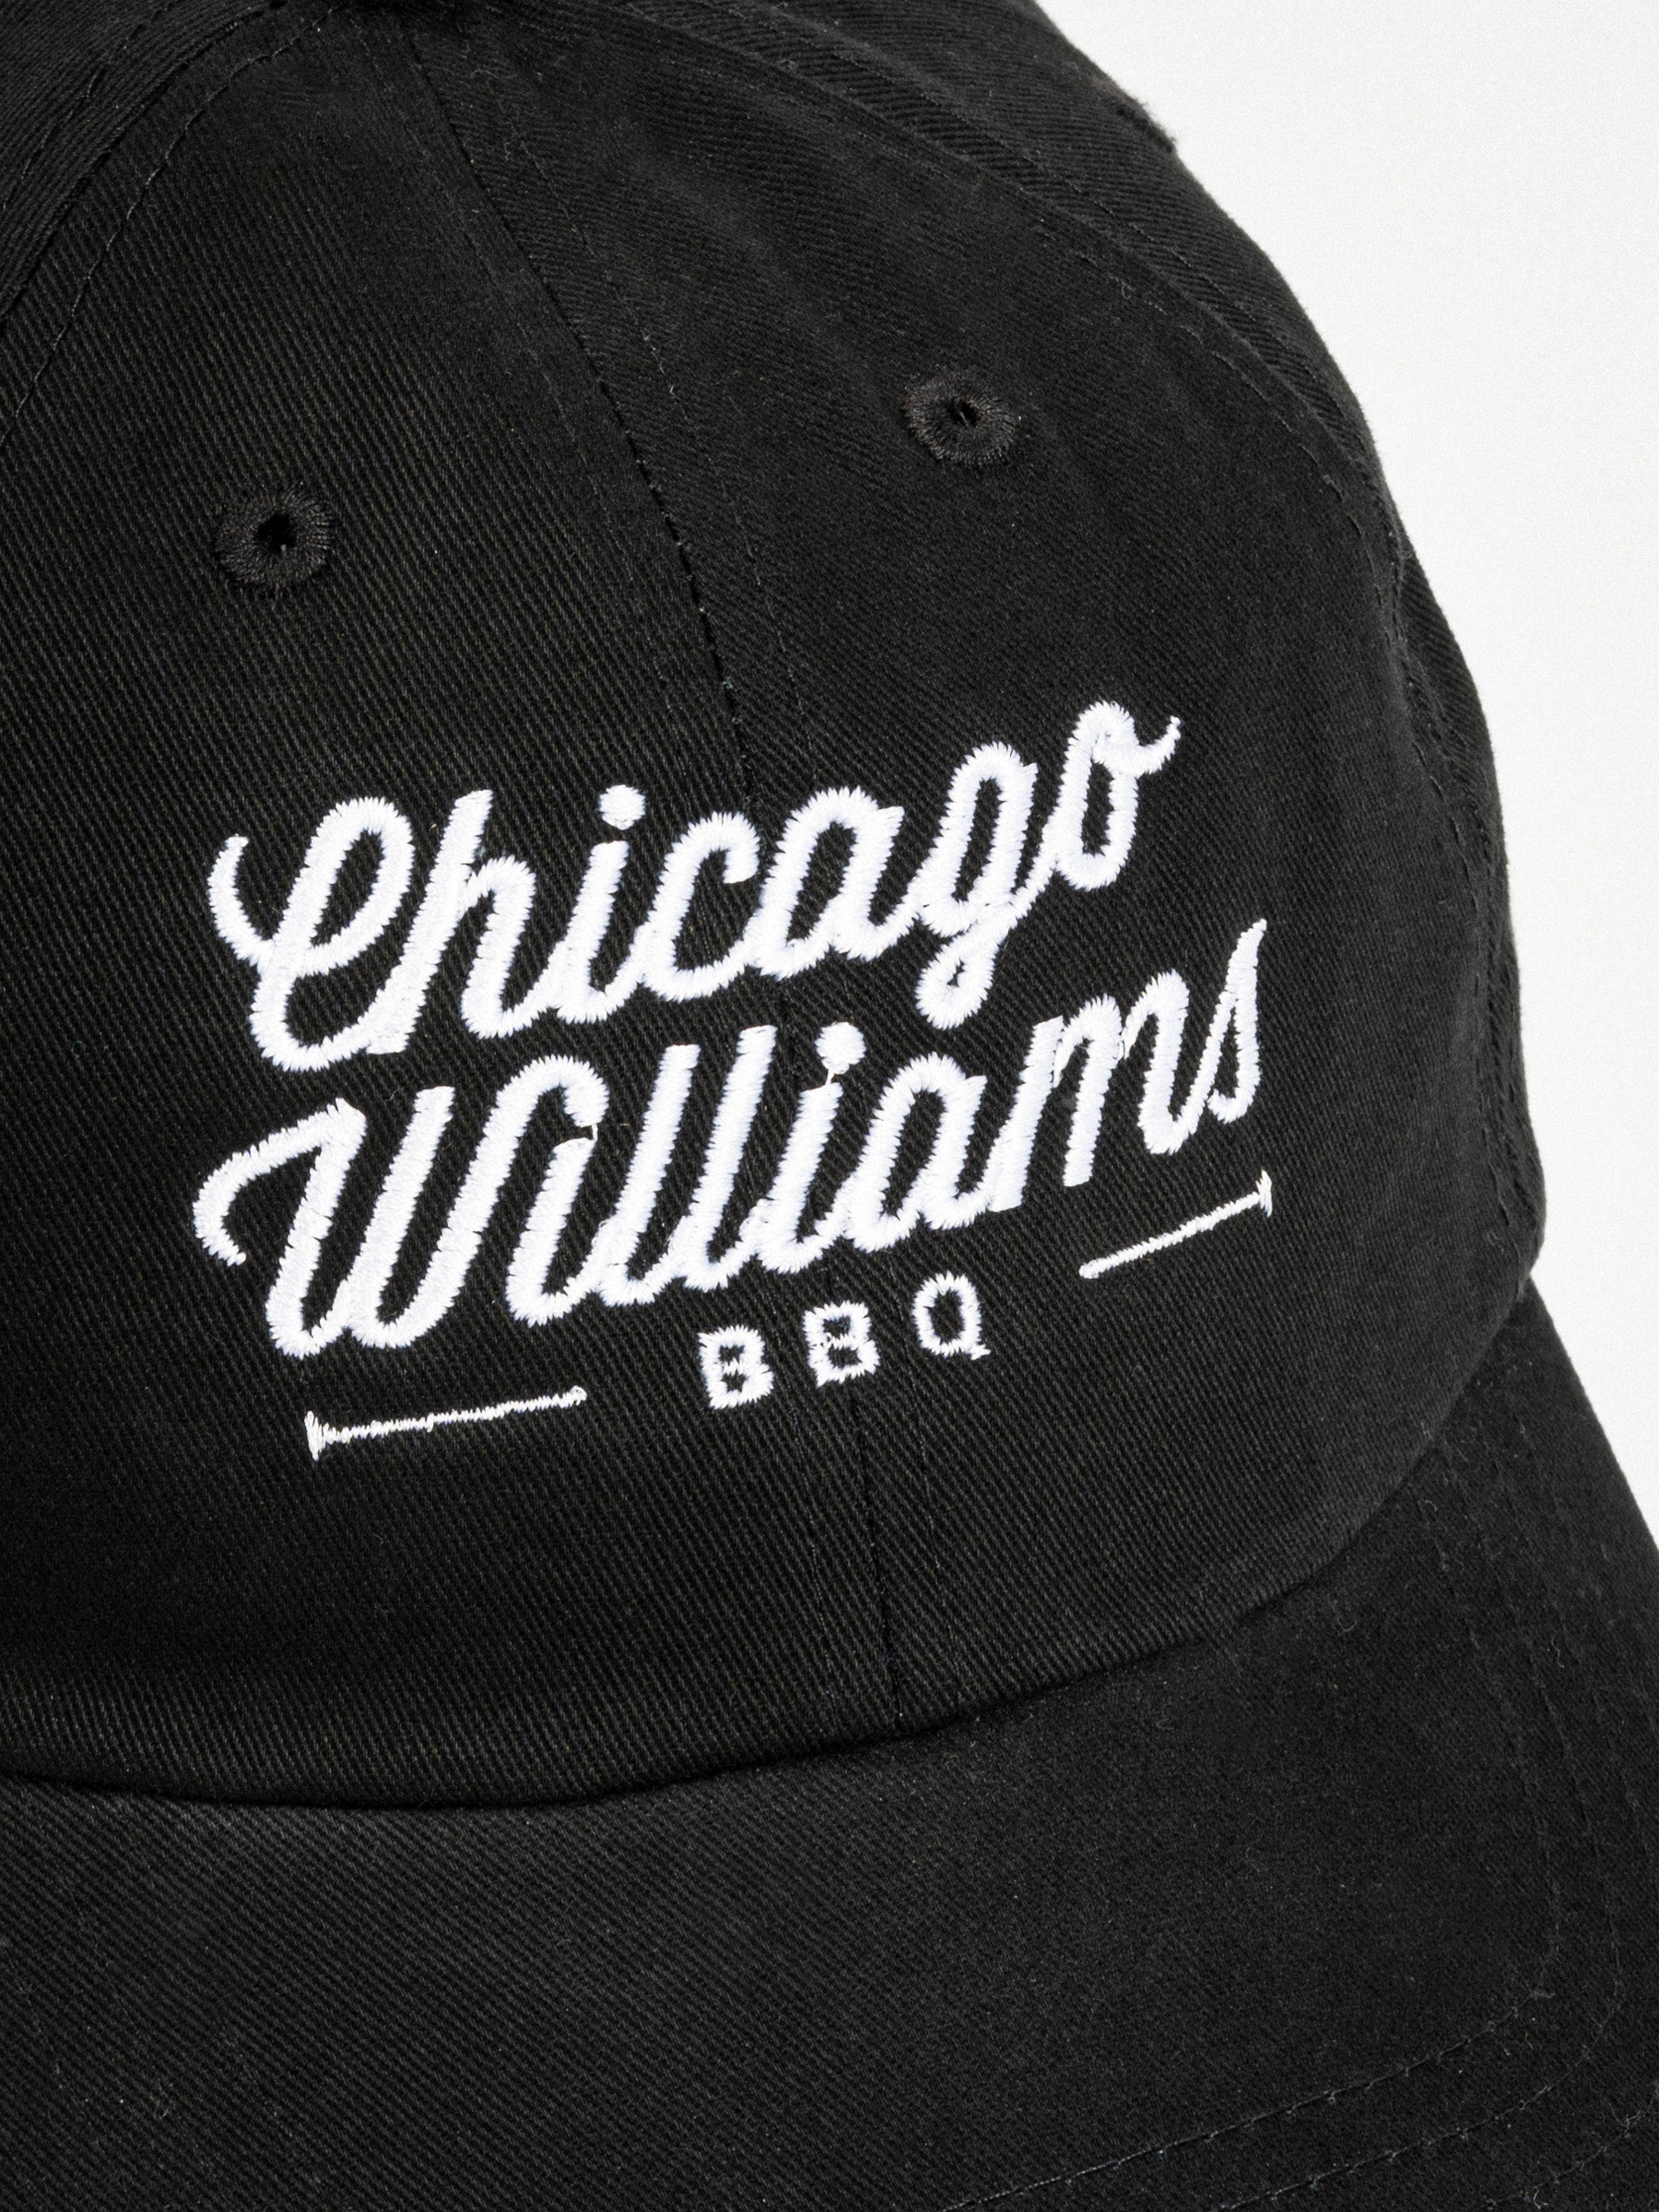 Chicago Williams Logo Dad Cap Black